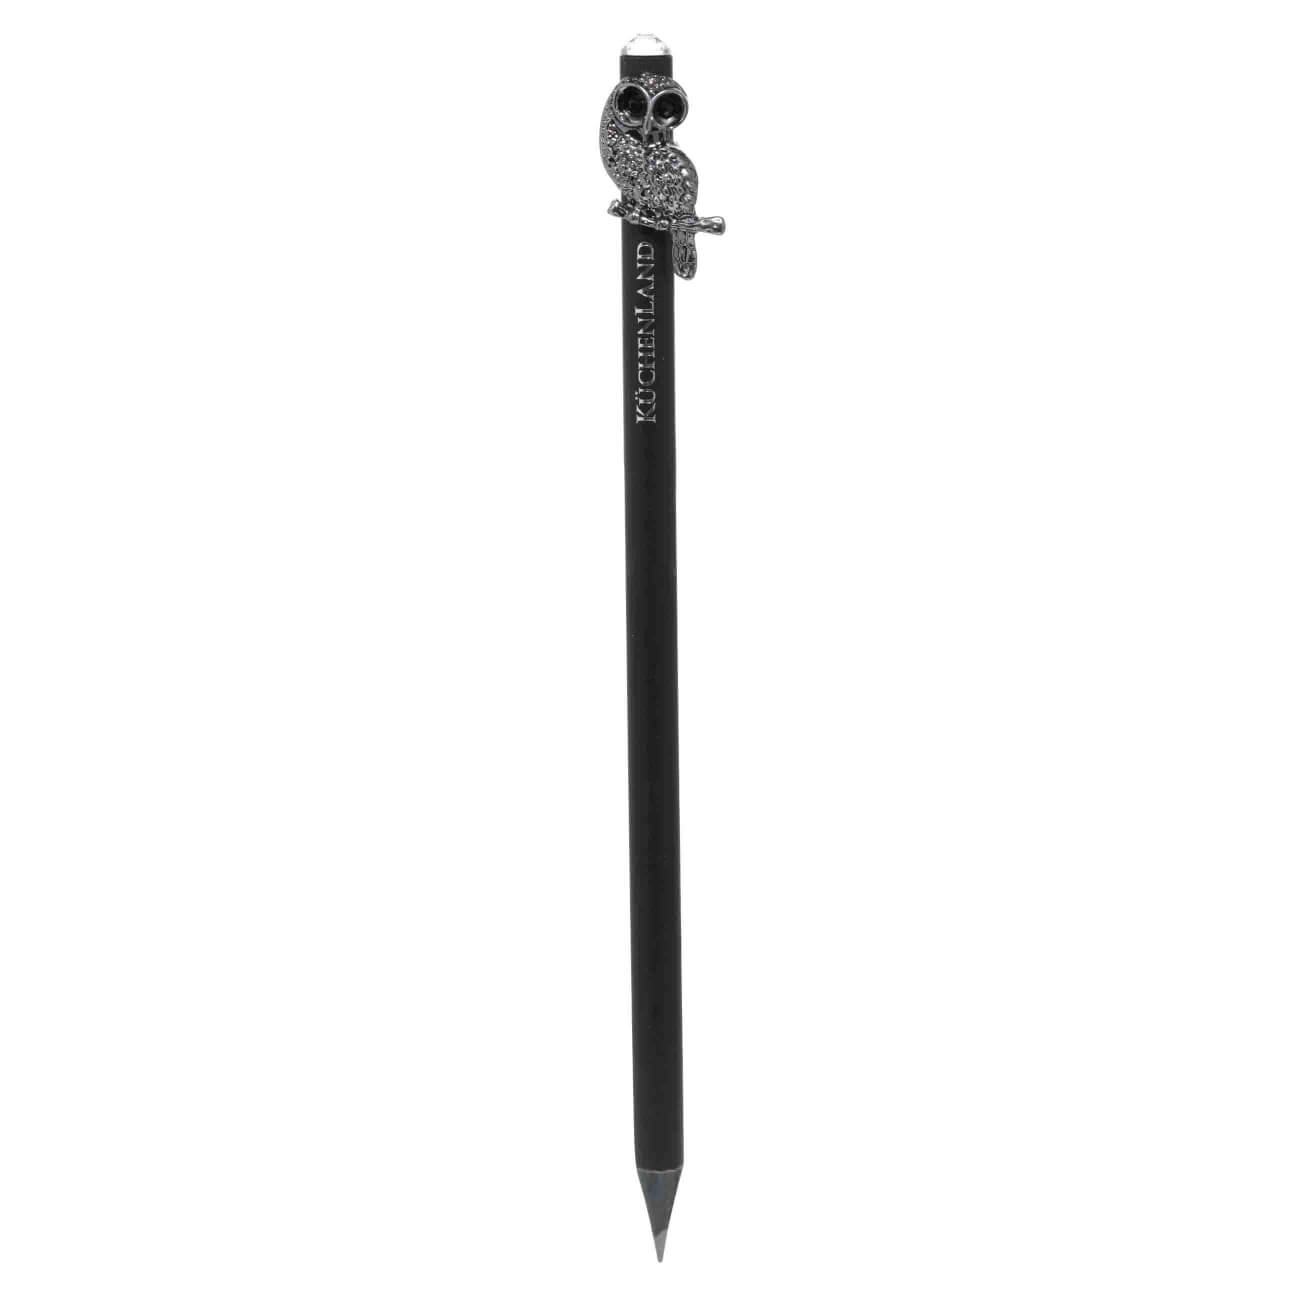 Карандаш, 18 см, чернографитный, с фигуркой, черный, Сова, Draw figure карандаш 18 см чернографитный серебристый draw sparcle